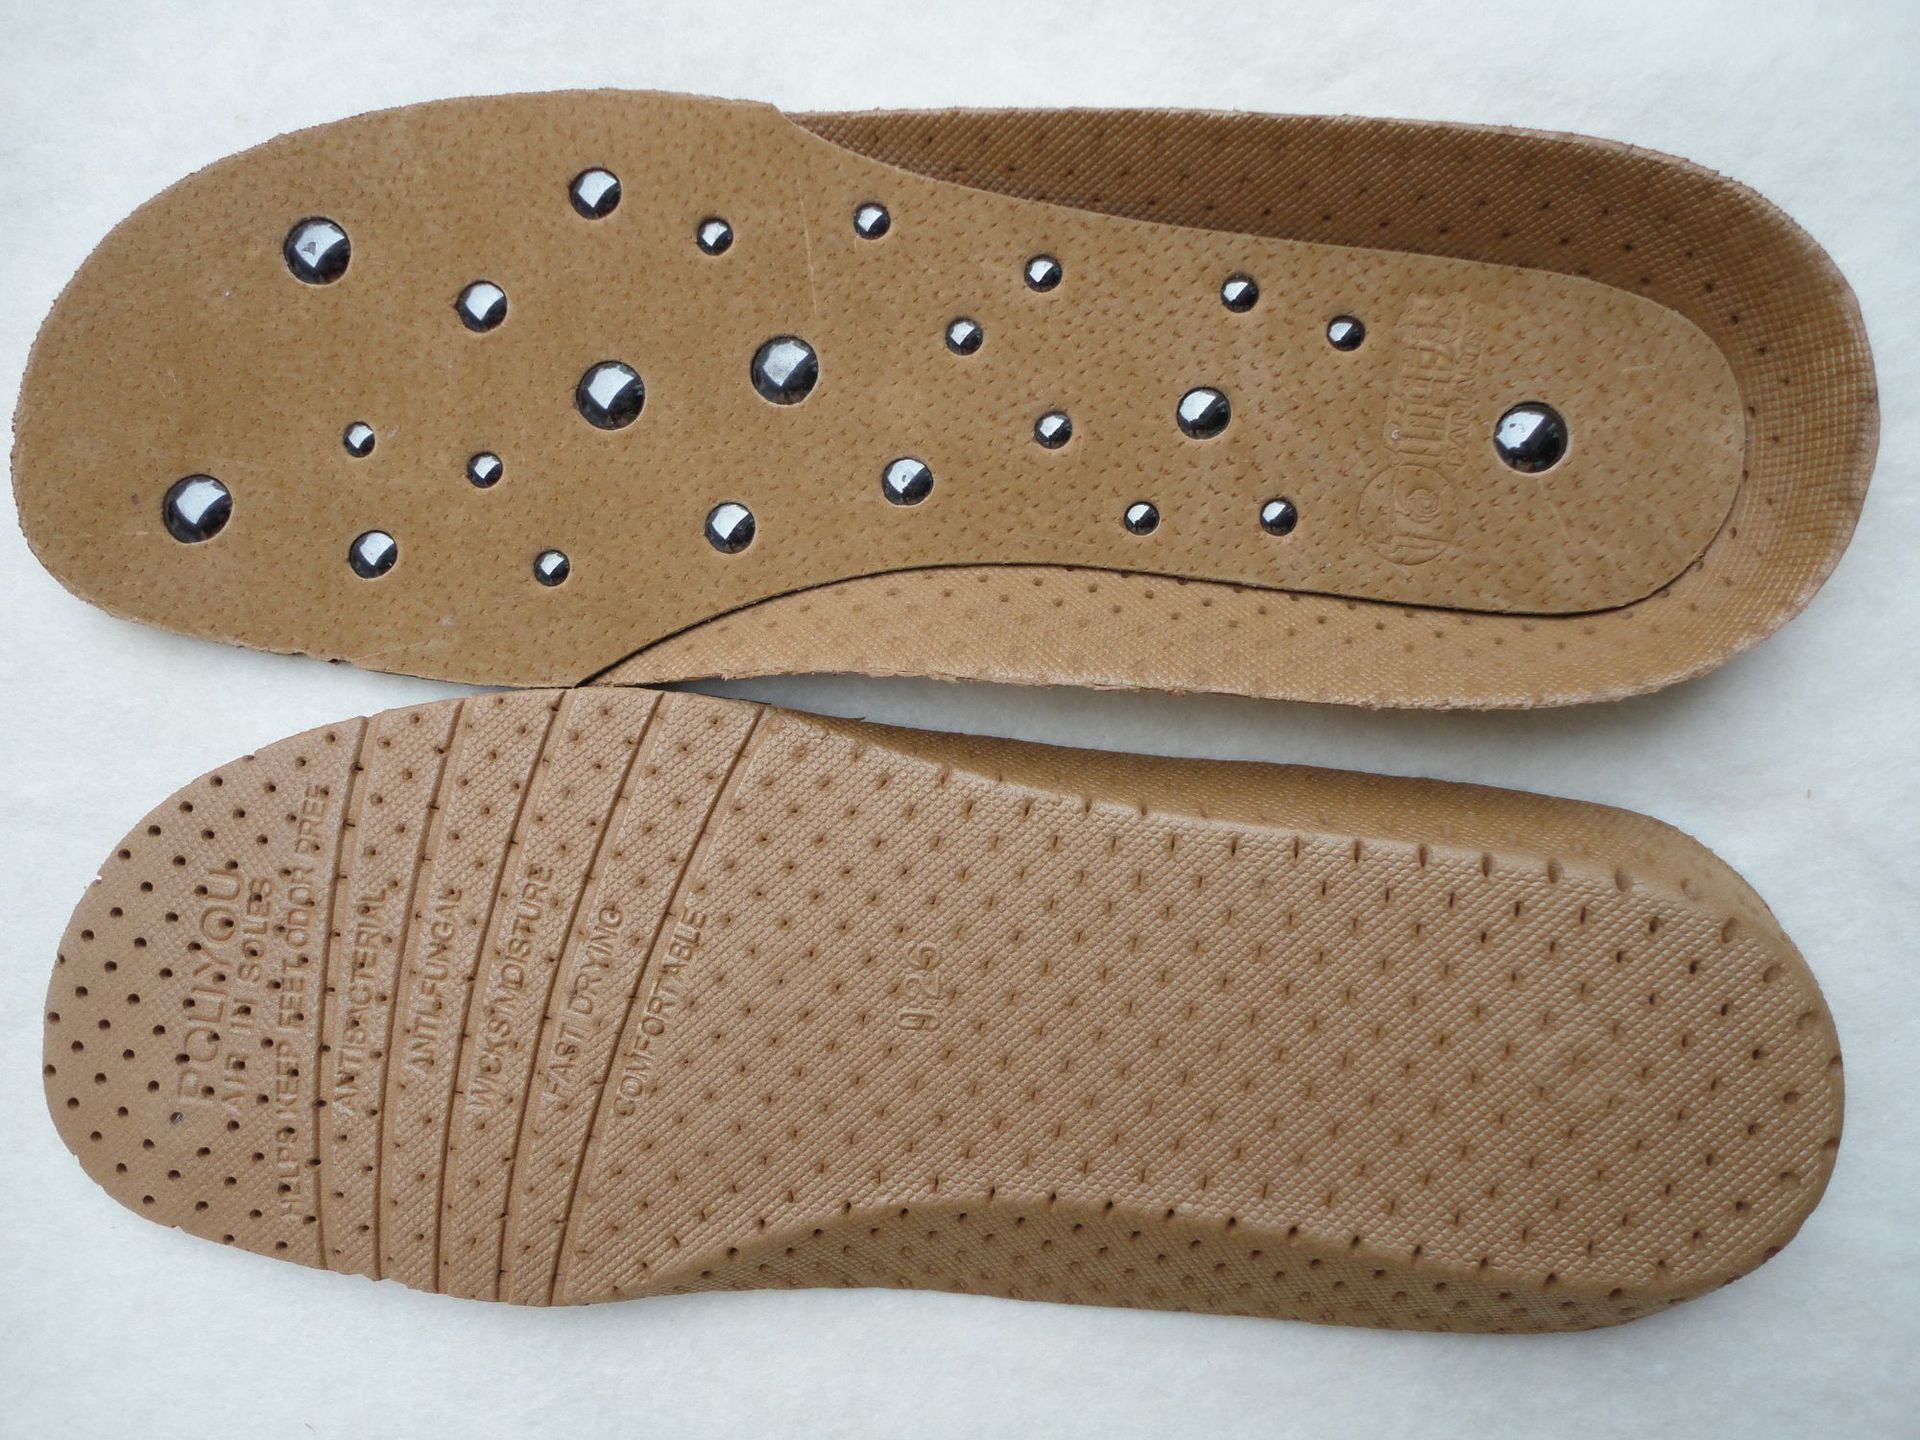 磁疗鞋垫 强磁按摩 面包磁 足部护理针灸磁,磁性真皮